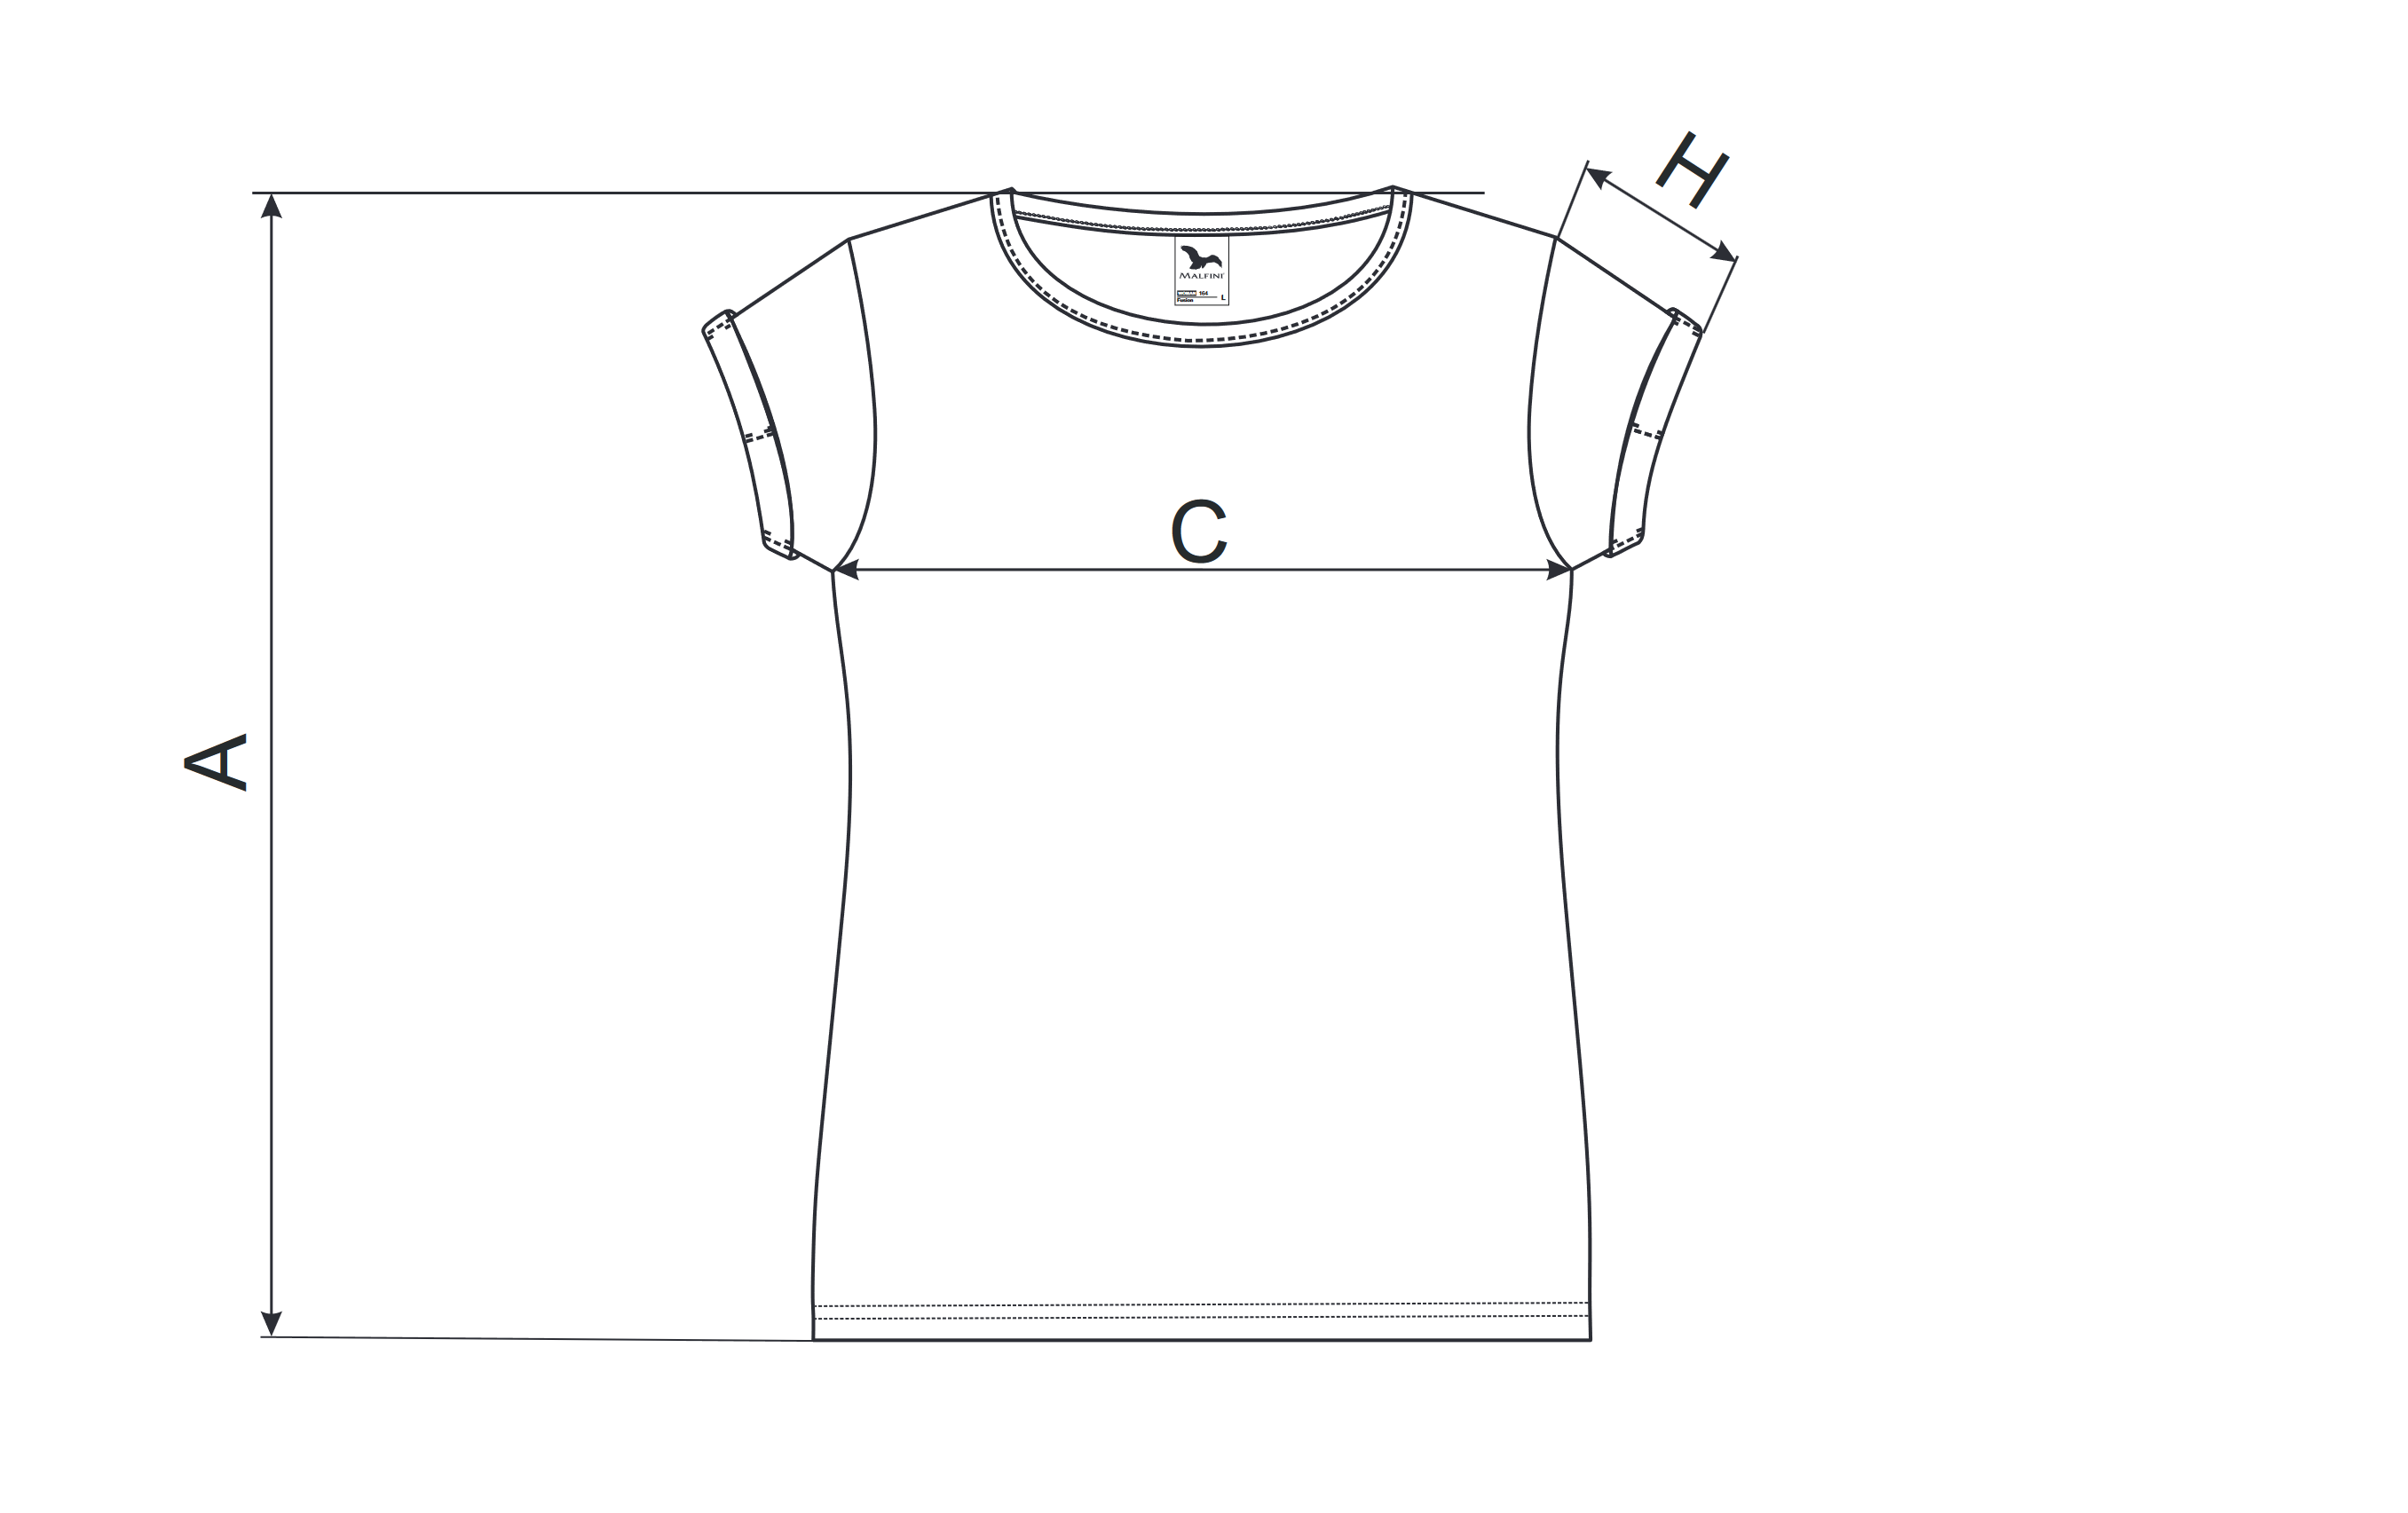 Dámské triko s vyhrnutými rukávy - Tabulka rozměrů